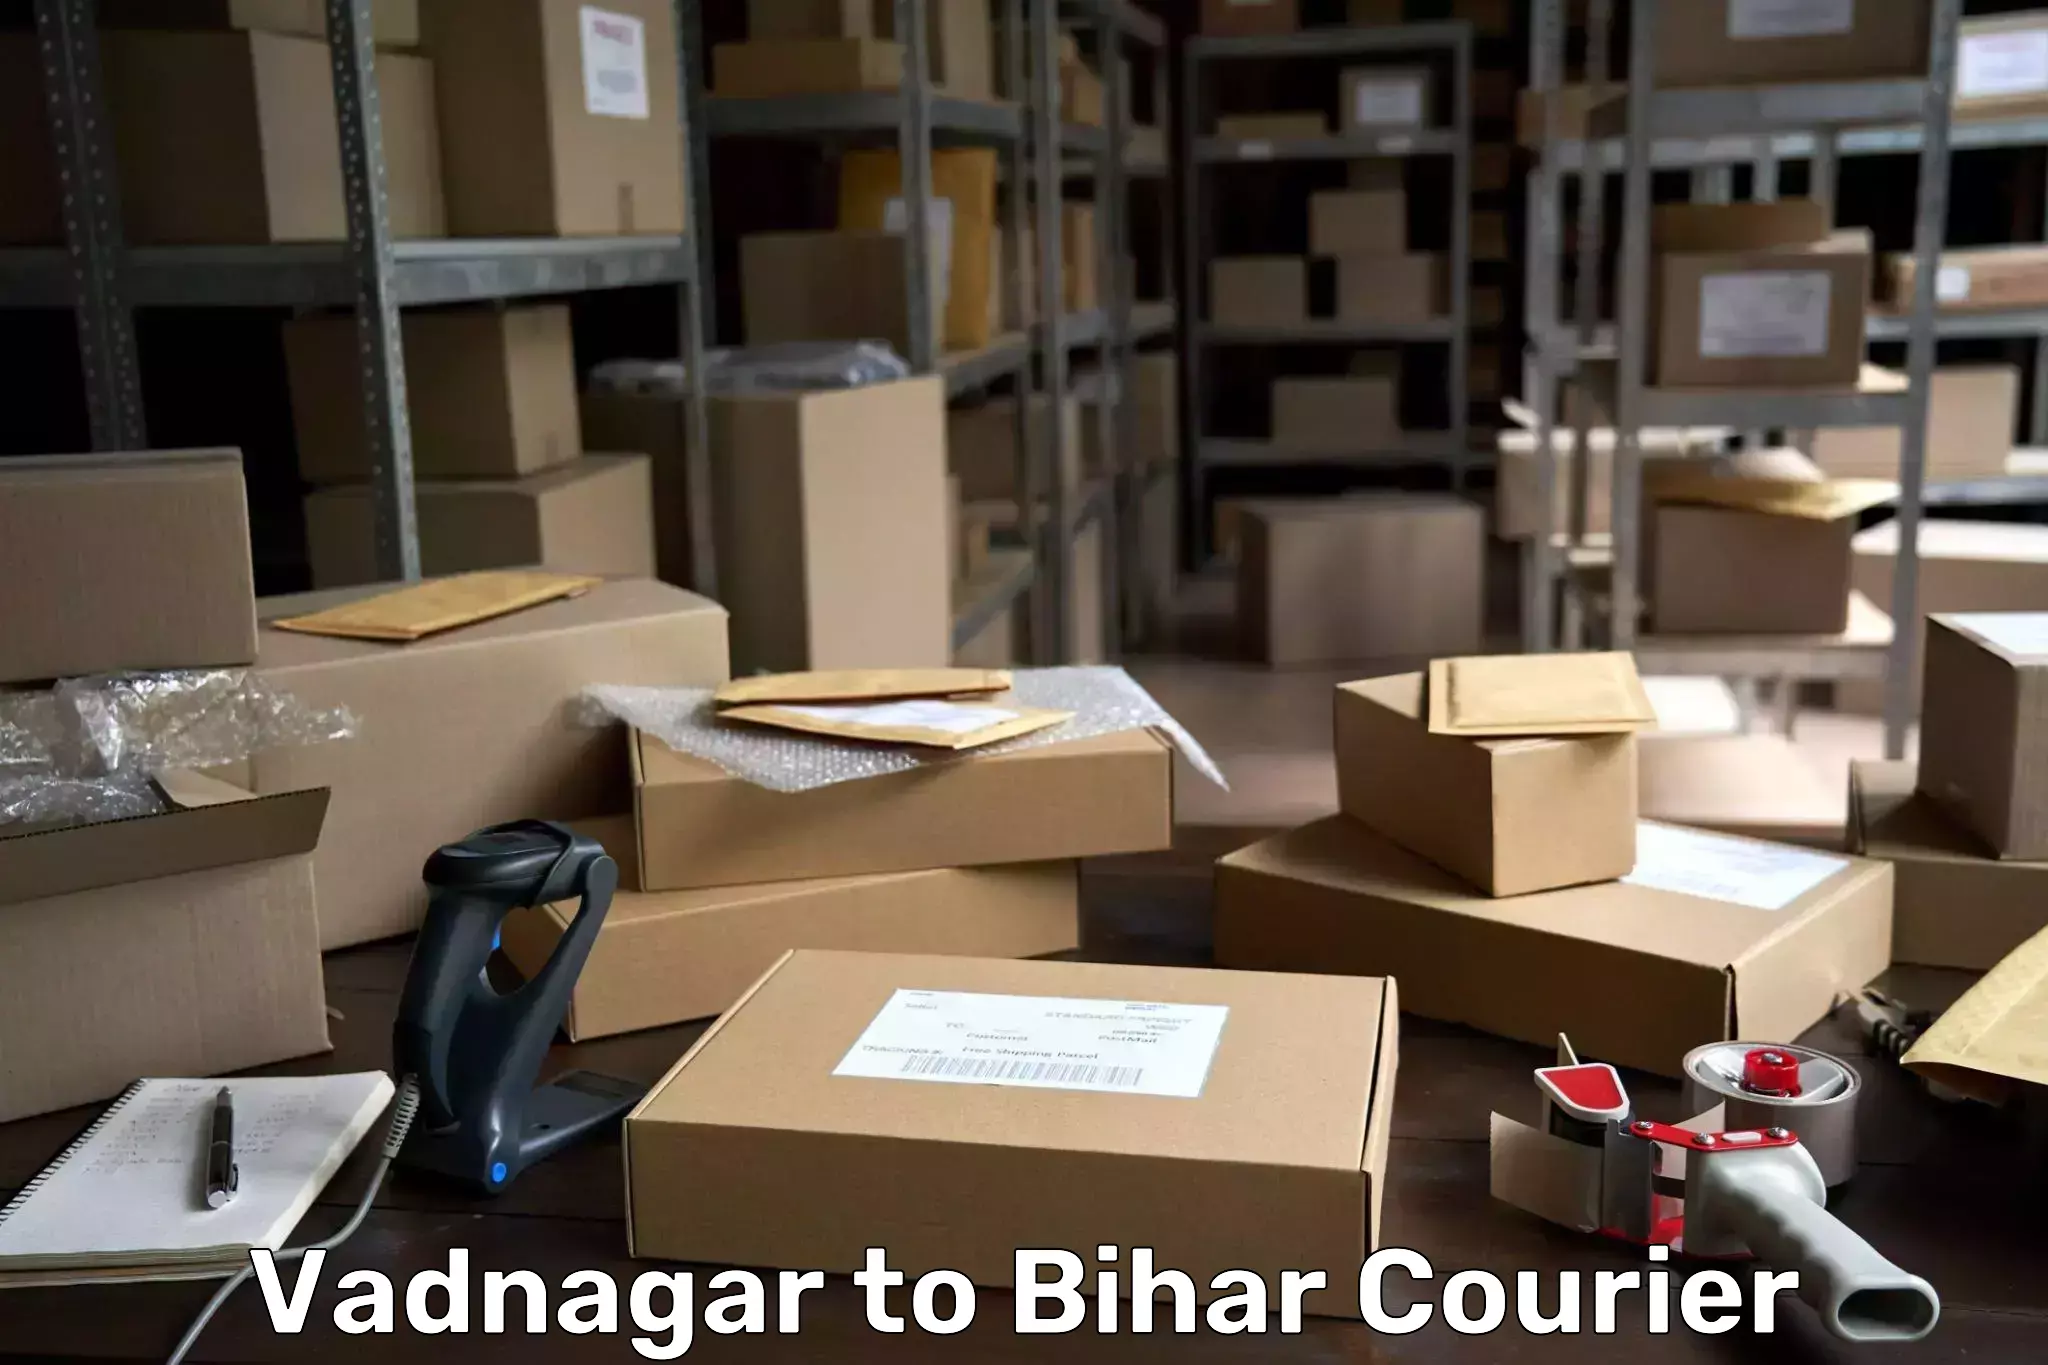 Bulk shipping discounts Vadnagar to Sandesh